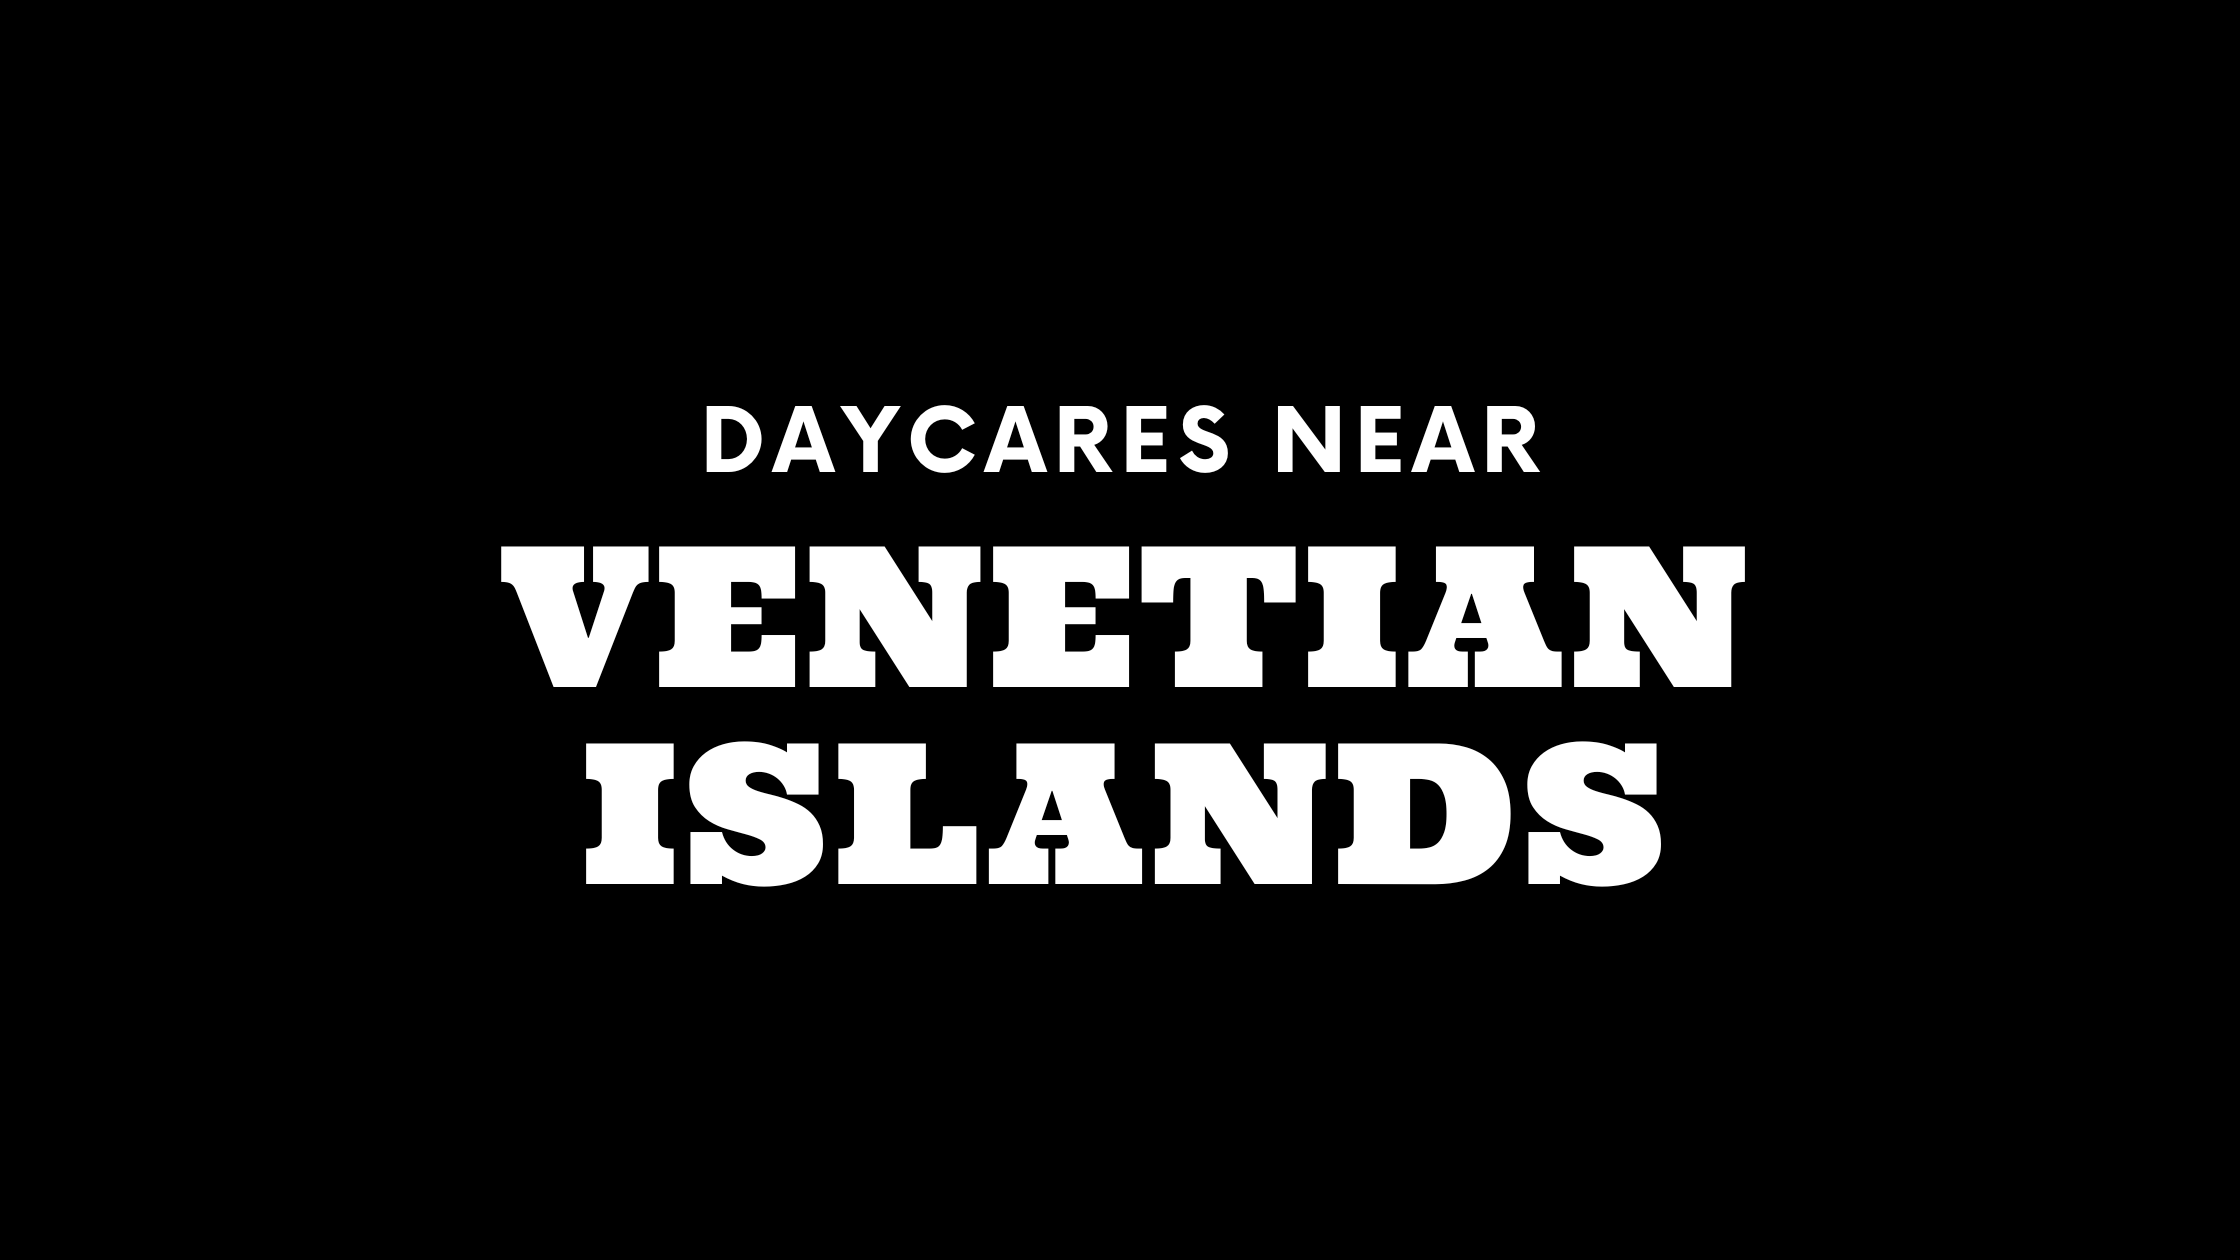 Daycares Near Venetian Islands